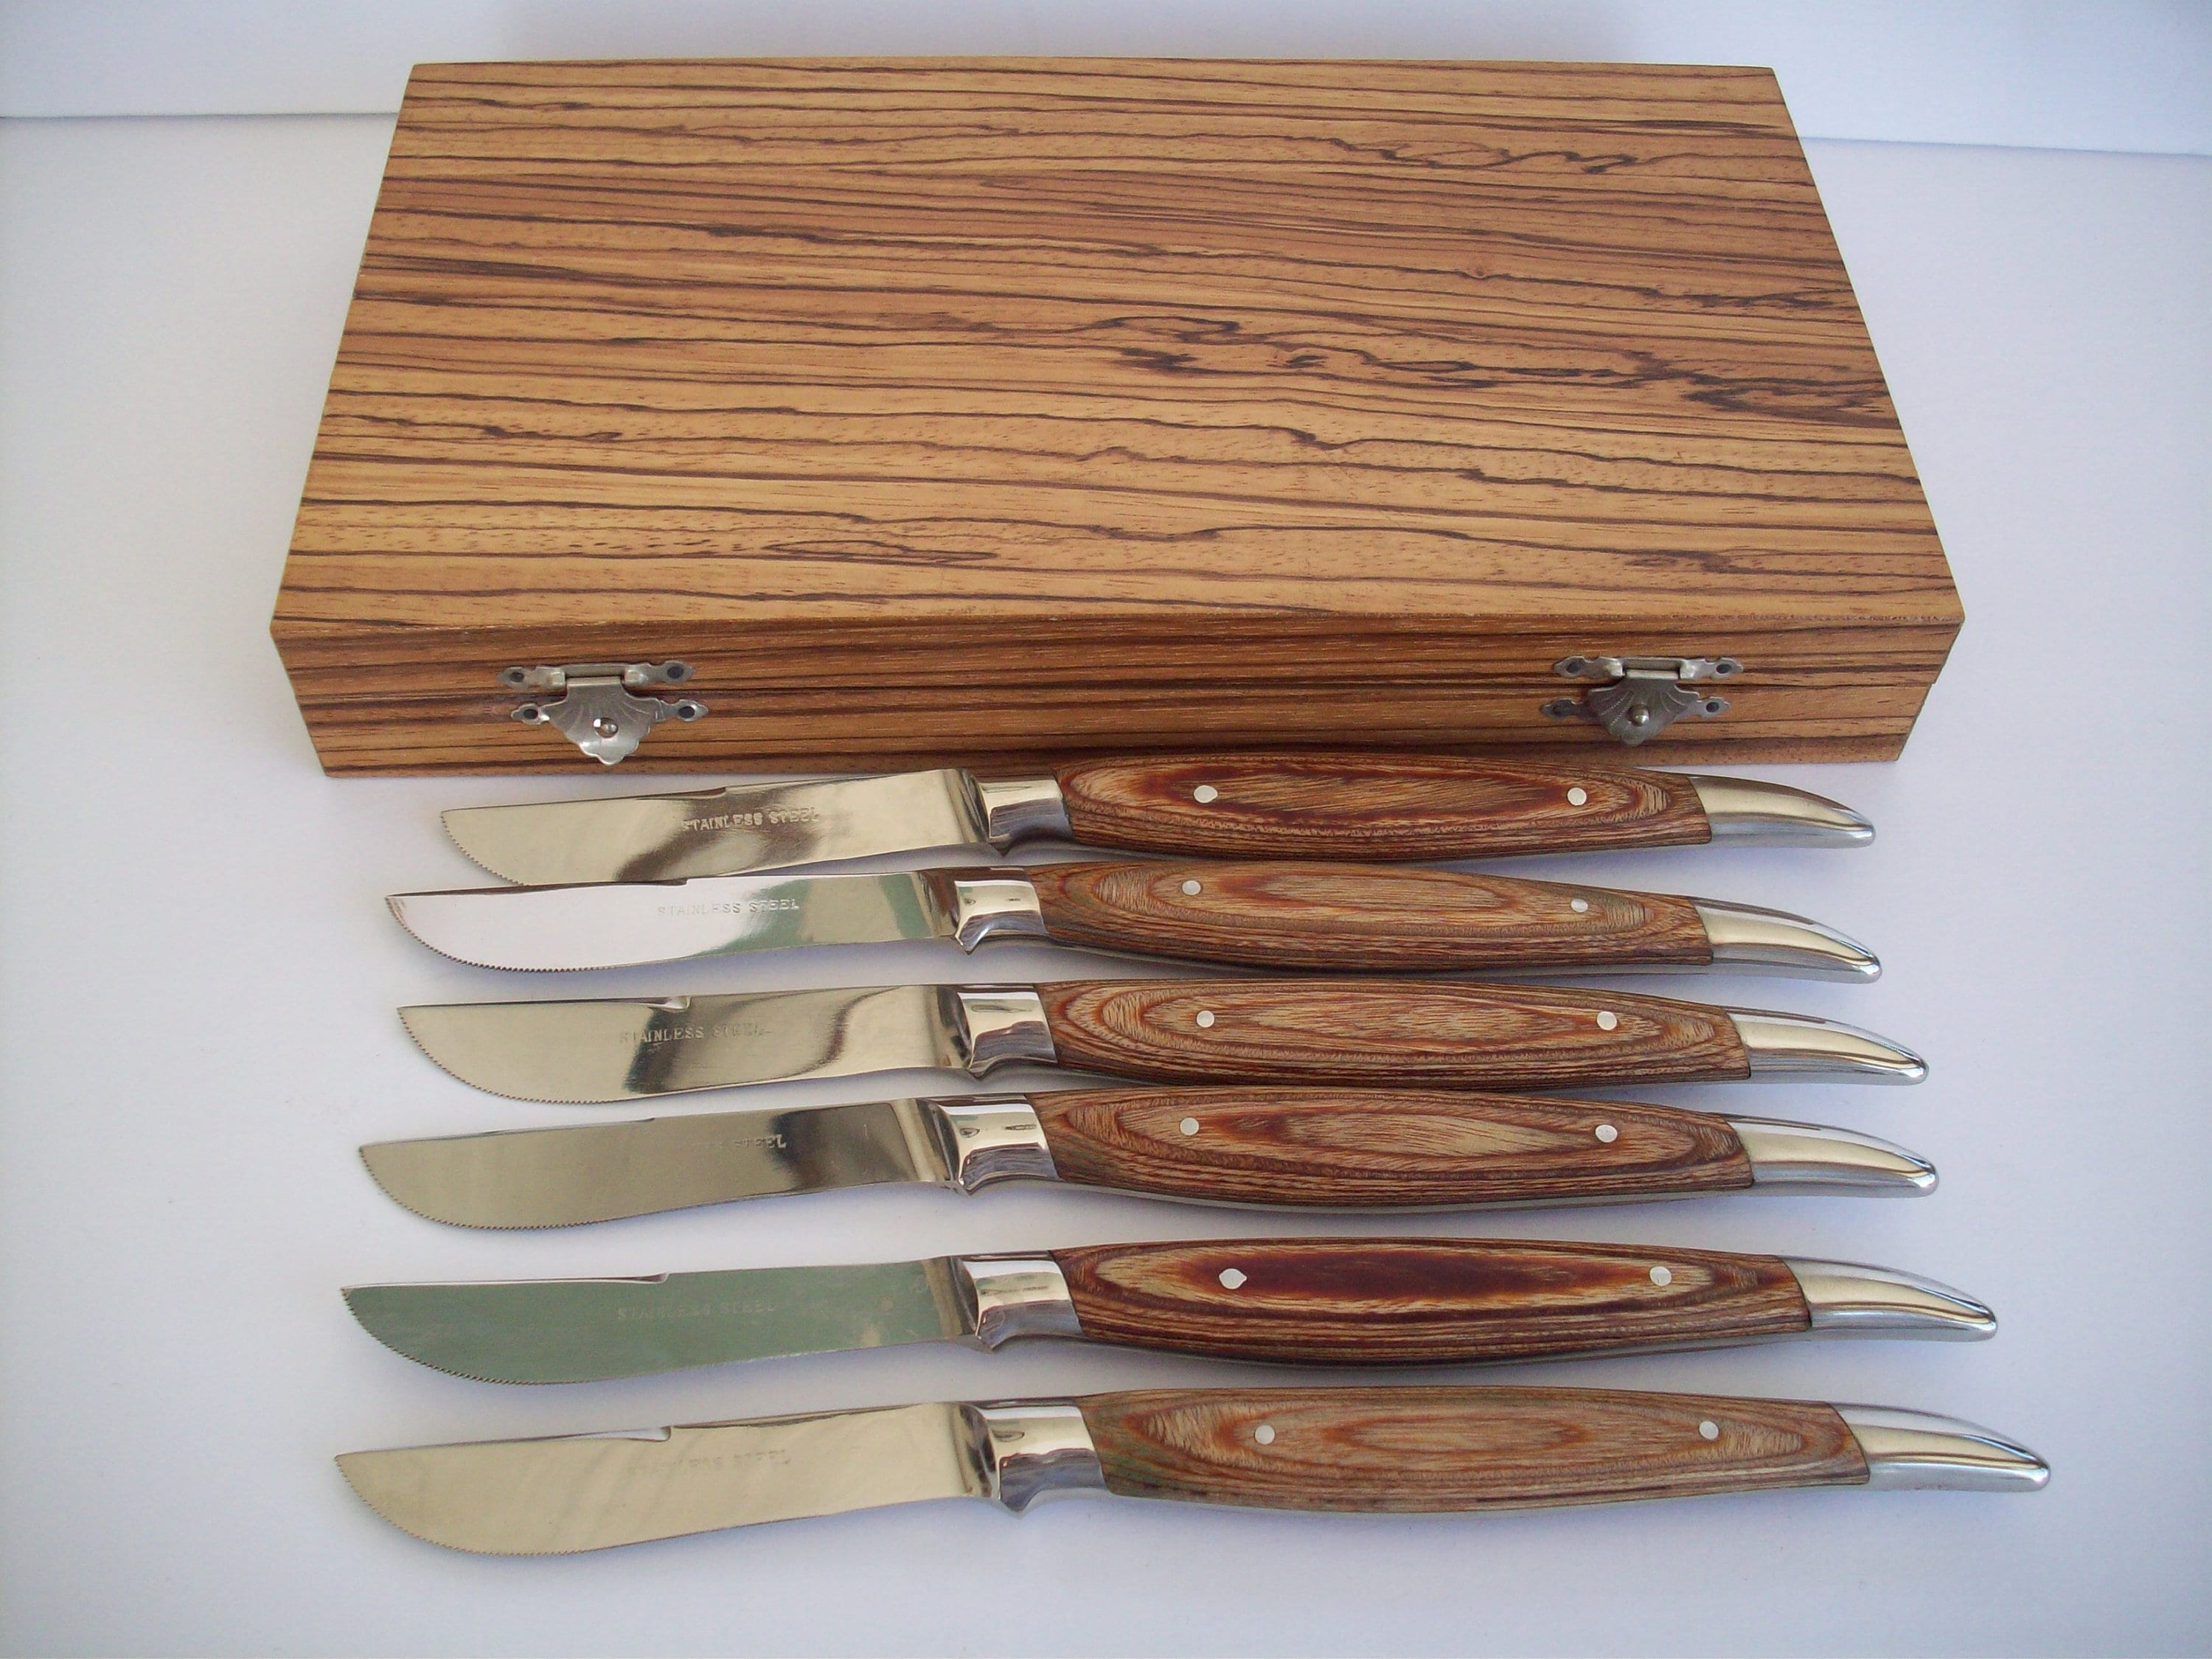 Vintage Cutco 59 Steak Knives Set of 8 Brown Wood Grain Handle Knife in  Wooden Storage Box